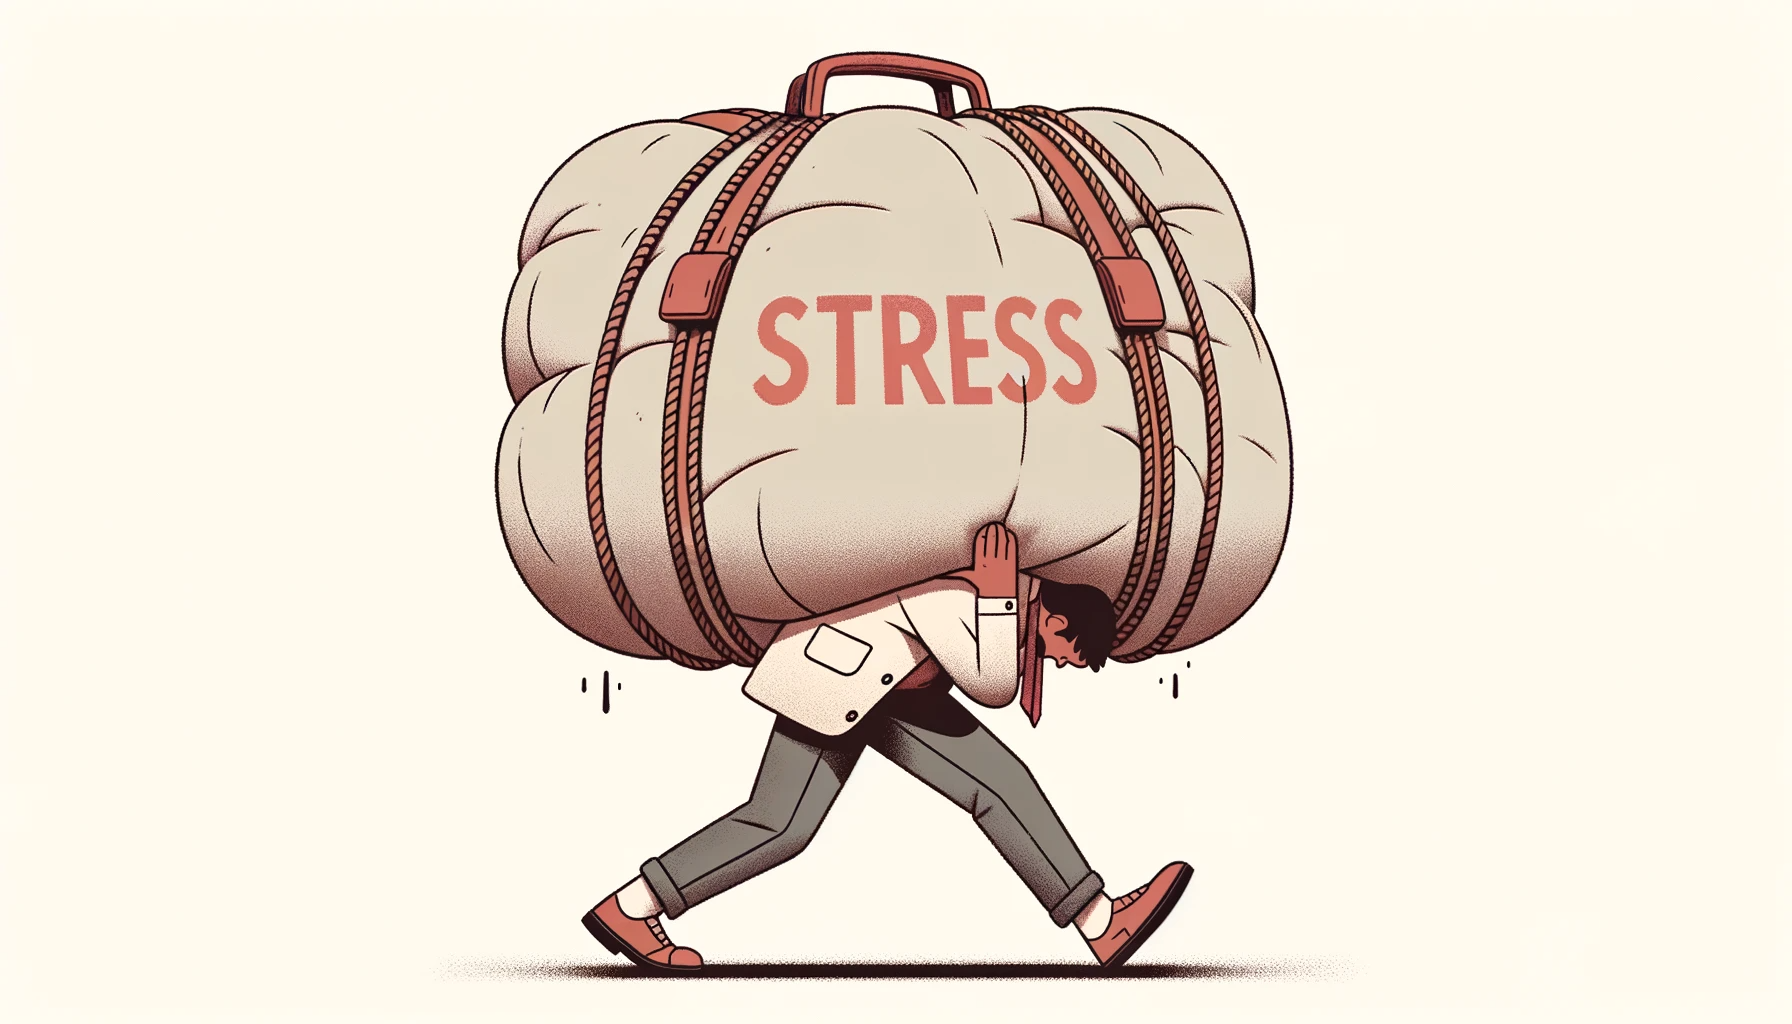 Un homme transpire sous l'effort de porter un sac géant qui comporte l'inscription "stress" sur son dos.